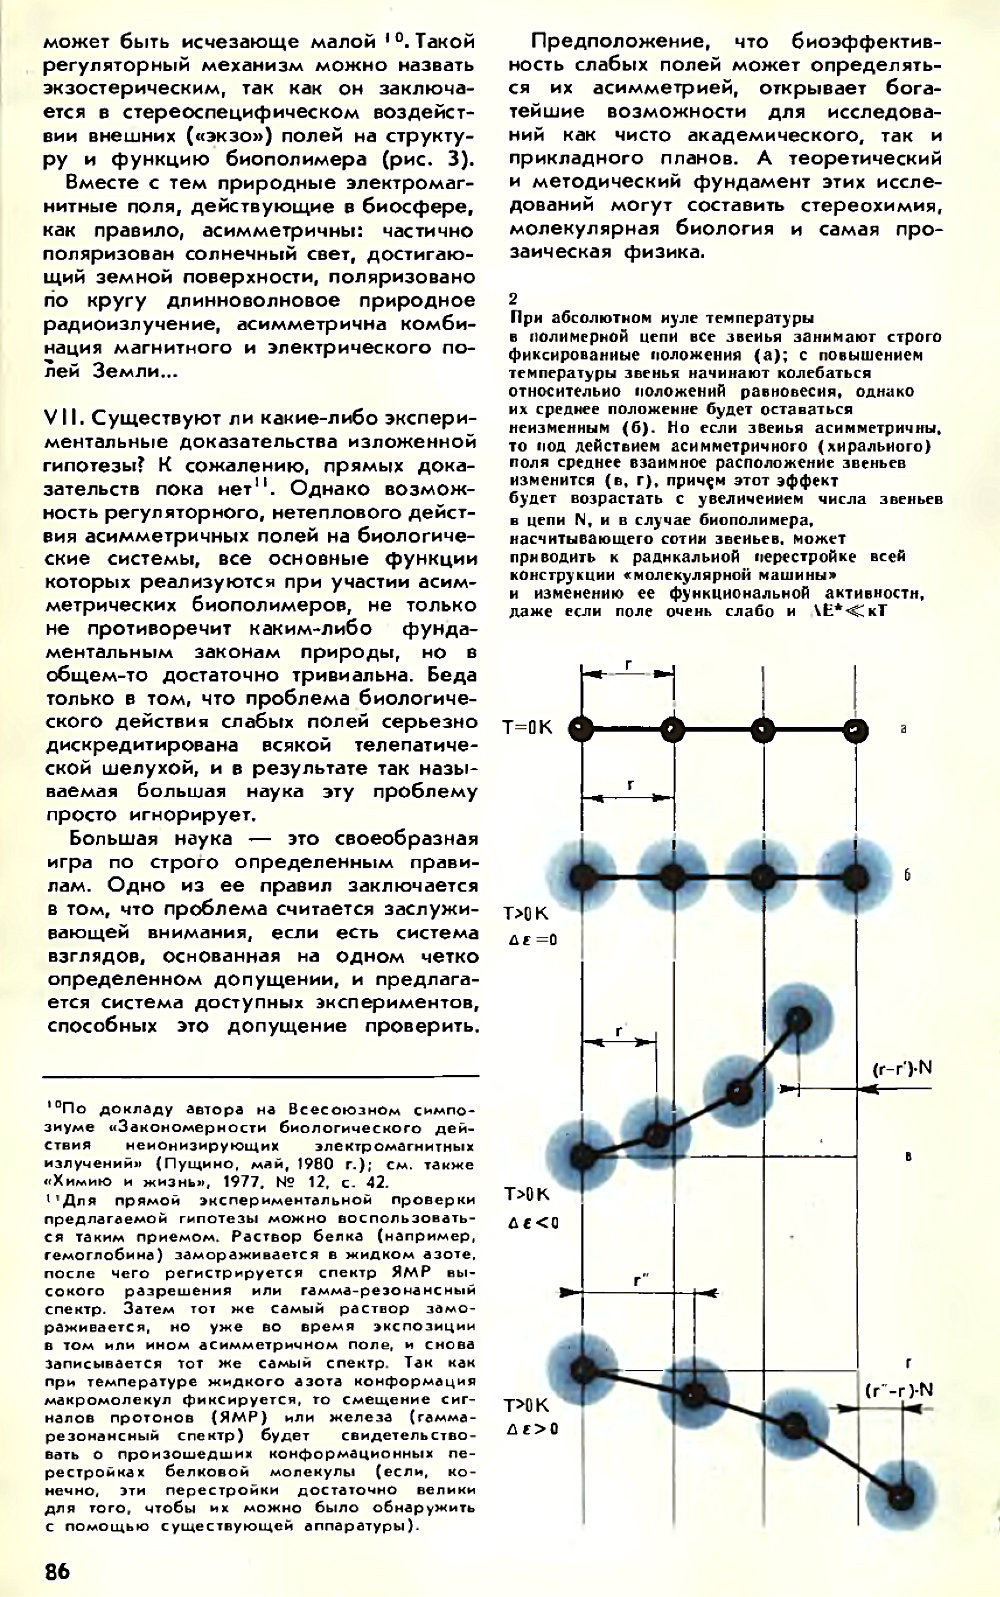 Асимметрия против хаоса, или что такое биополе. В. Жвирблис. Химия и жизнь, 1980, №12, с.81-87. Фотокопия №6